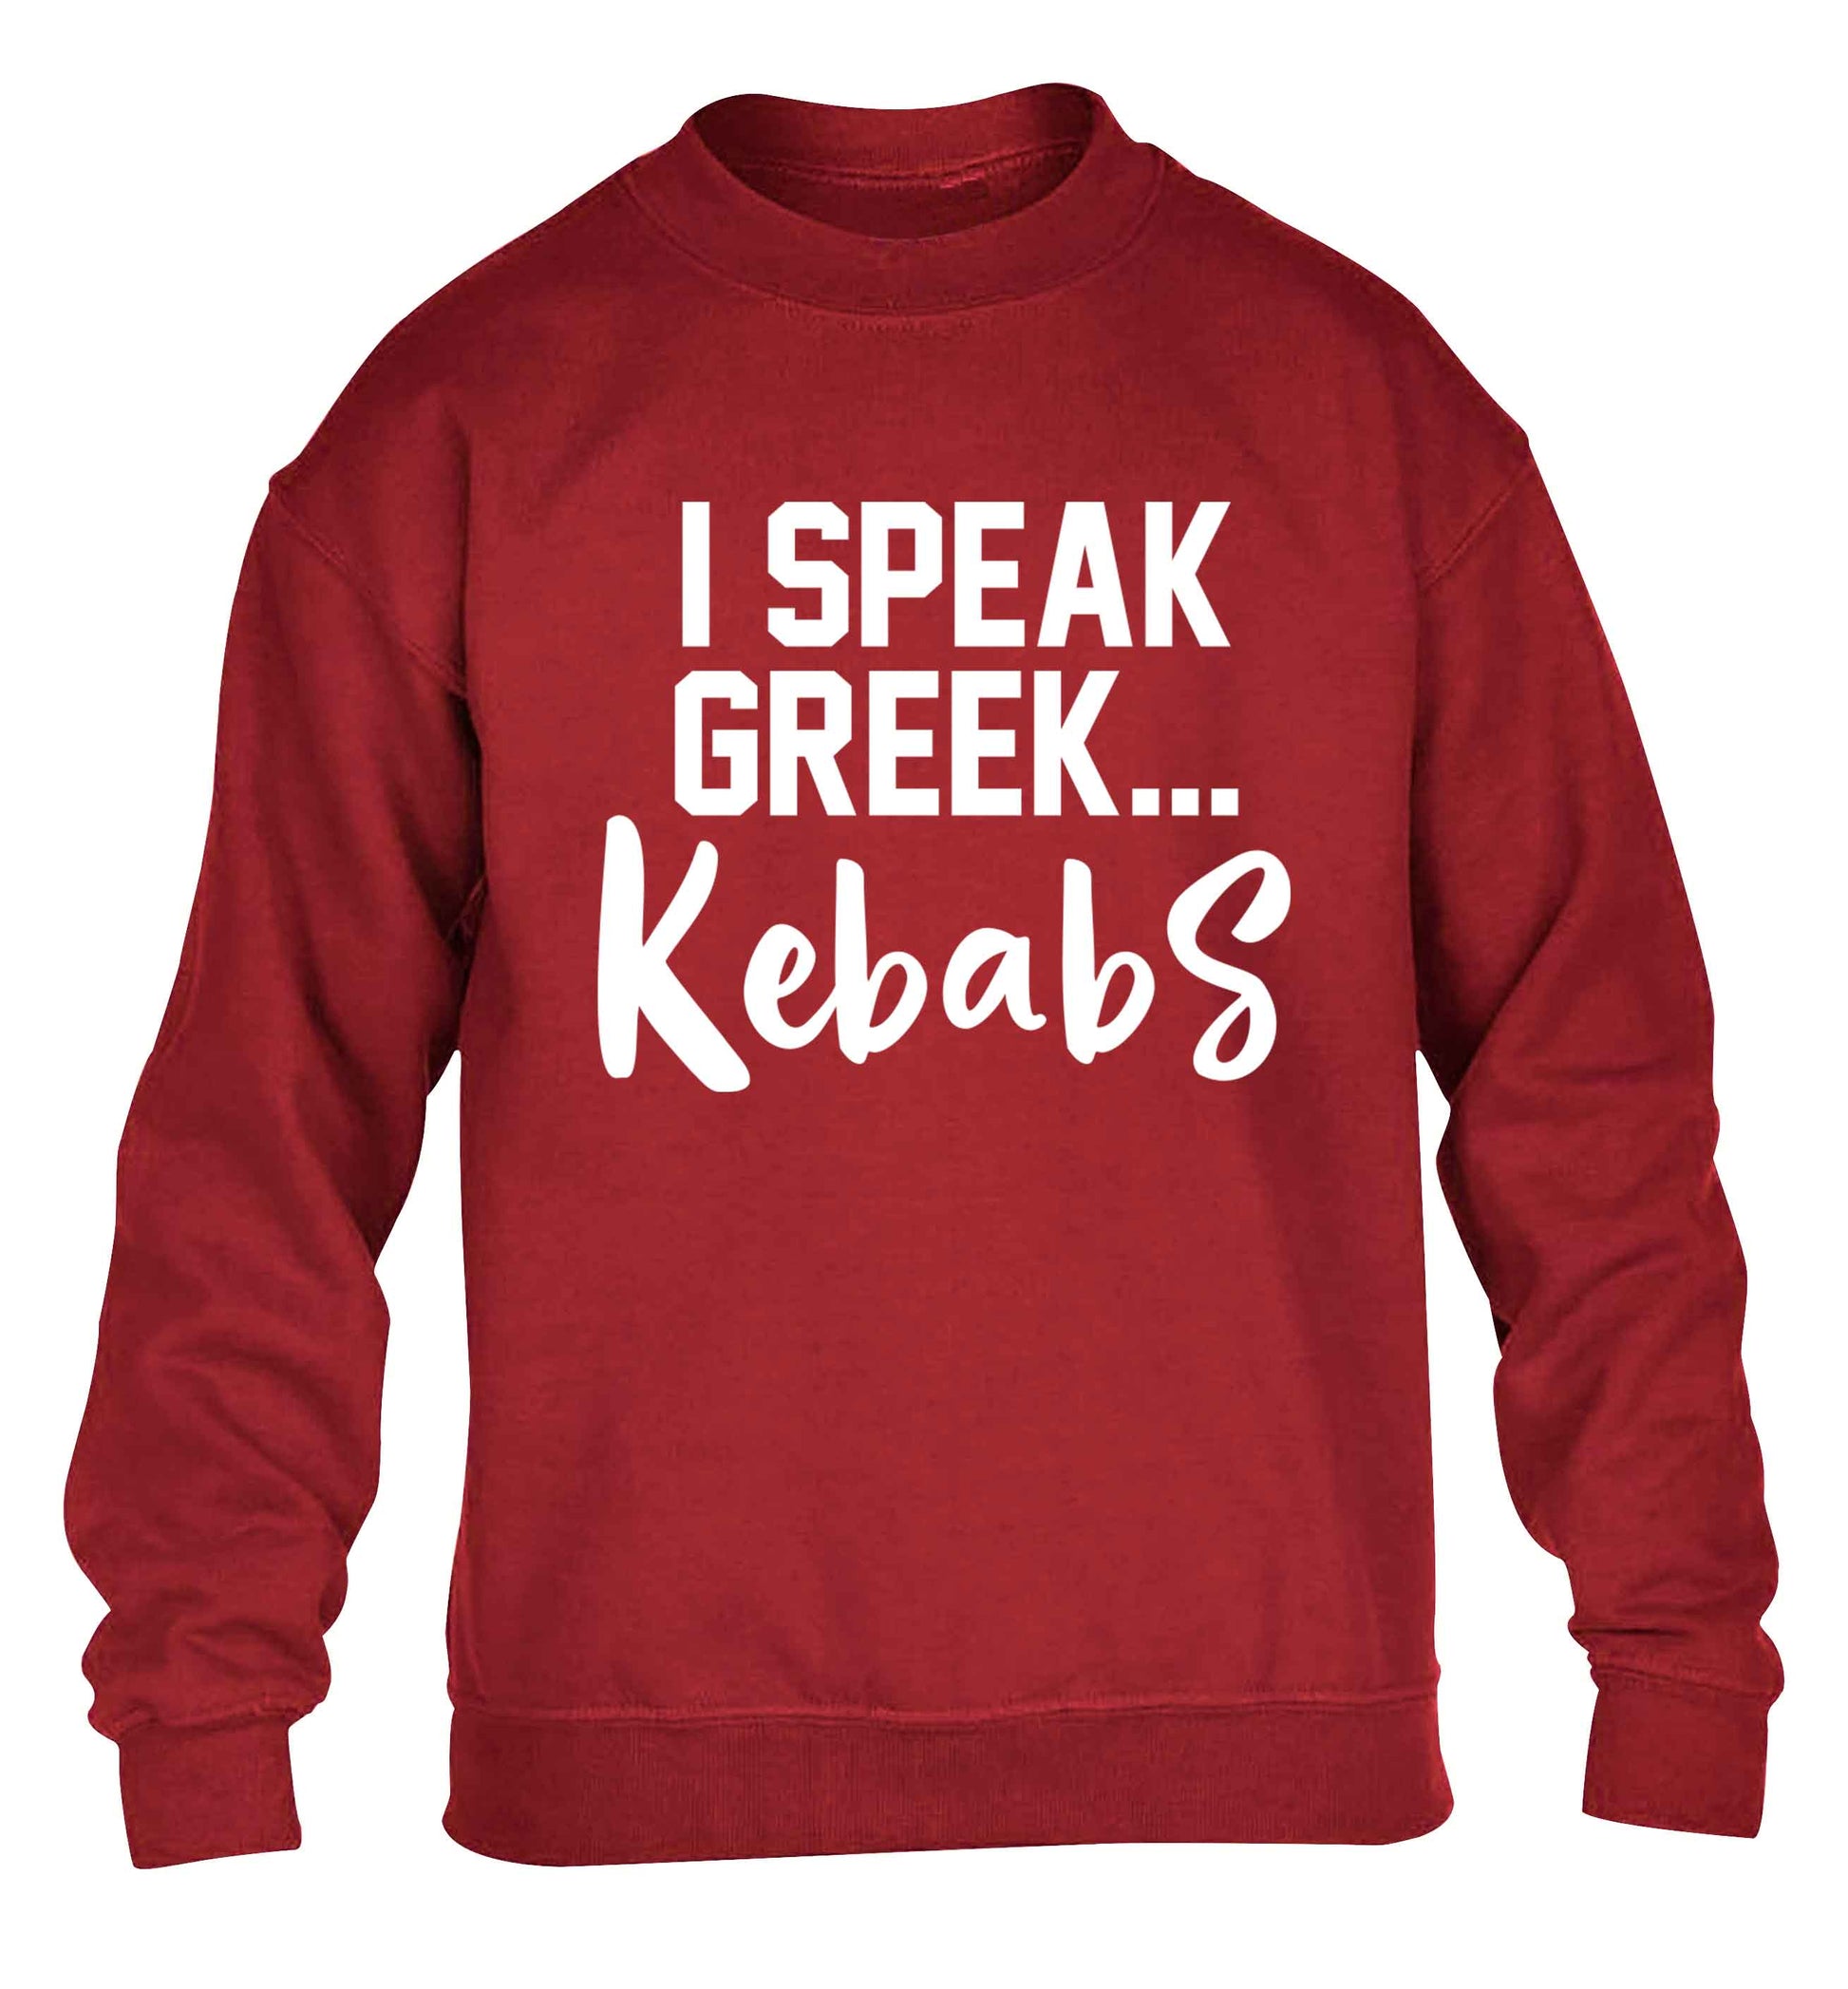 I speak Greek...kebabs children's grey sweater 12-13 Years